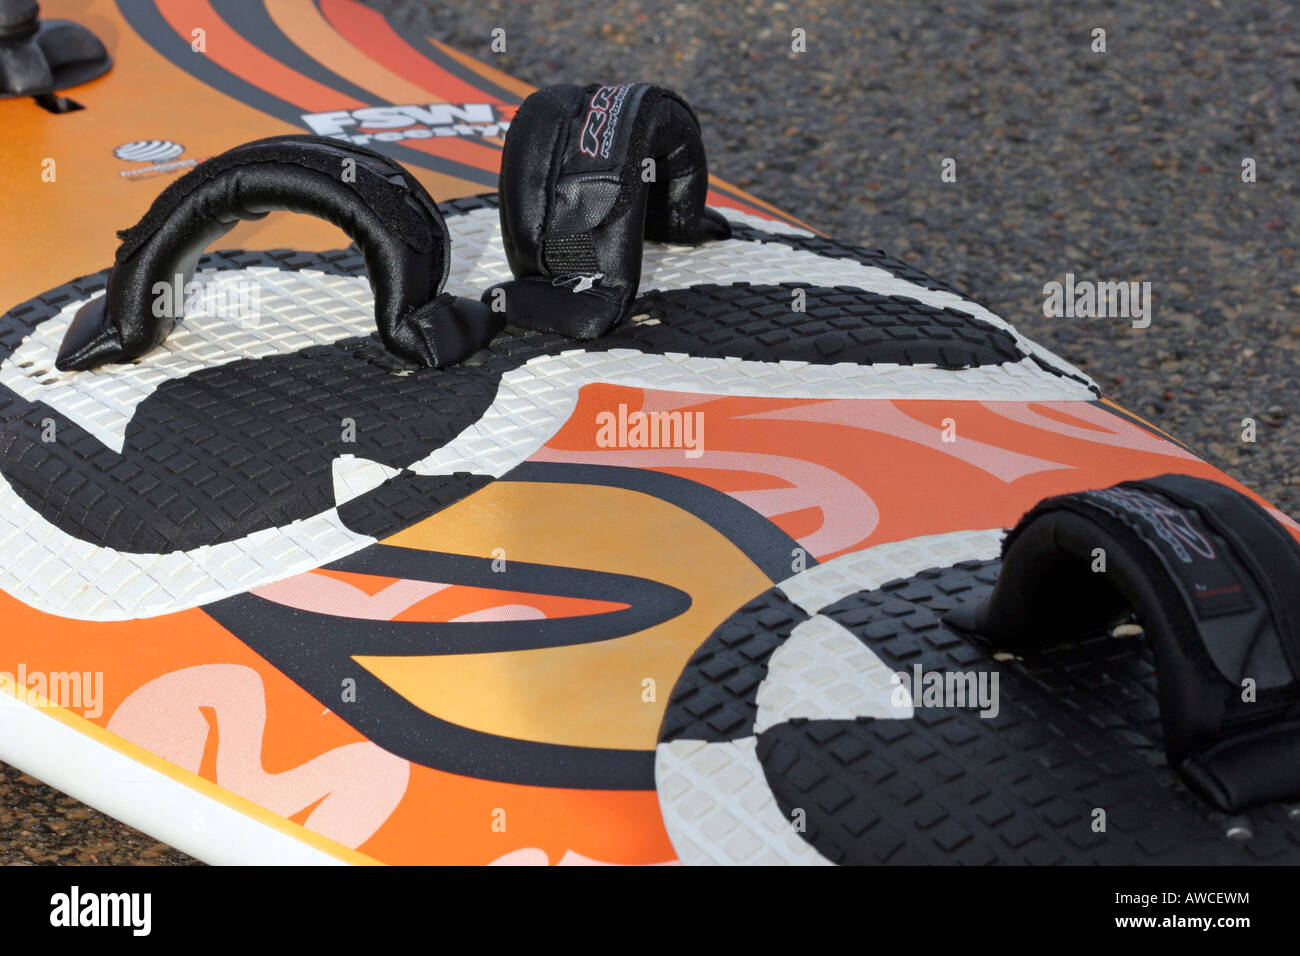 Tavola da Surf con grafica brillante in arancione e nero Foto Stock